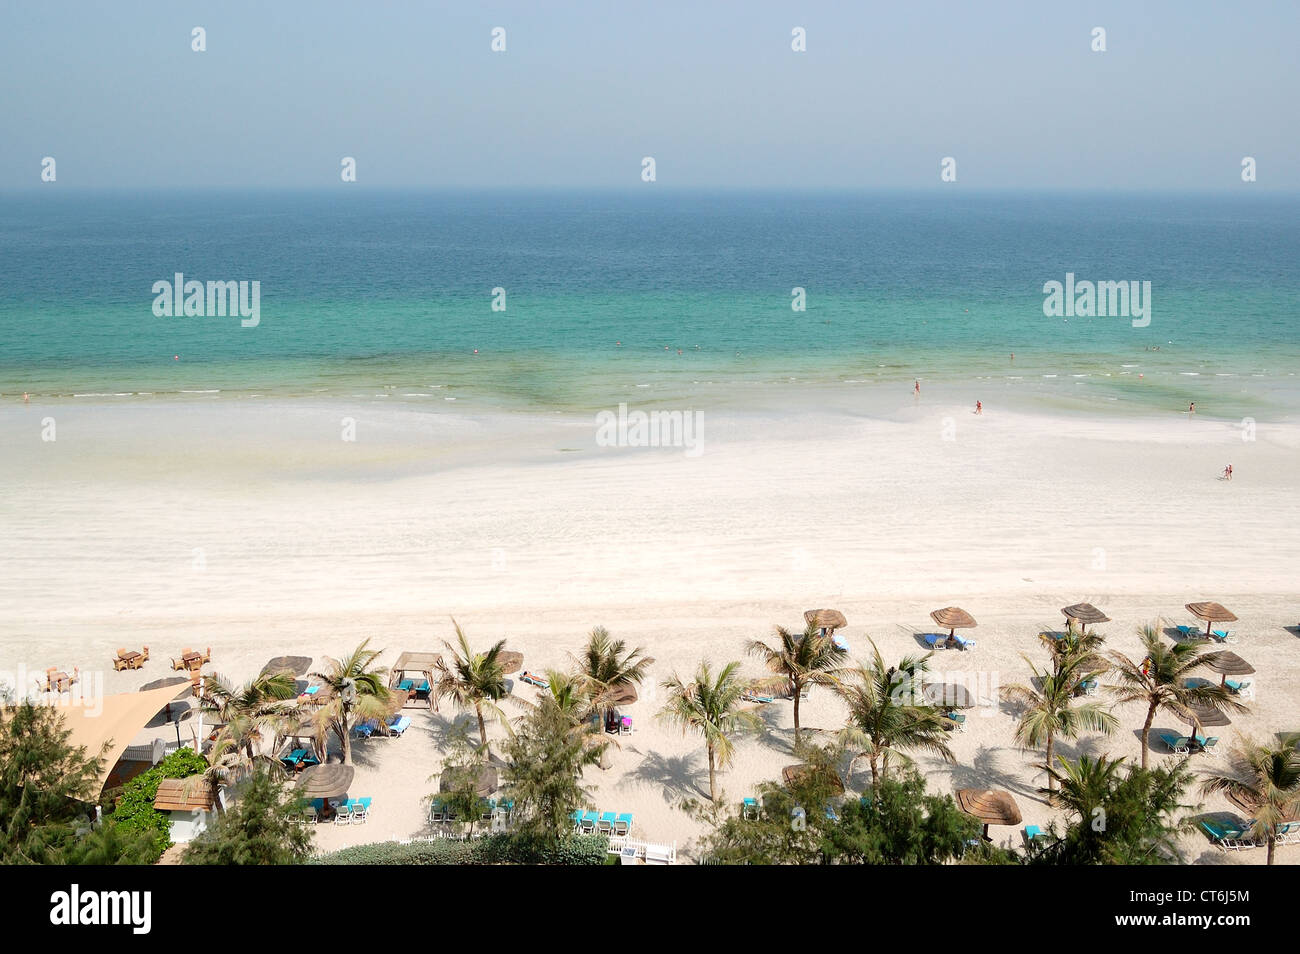 La playa y el agua color turquesa del hotel de lujo, Ajman, Emiratos Árabes Unidos Foto de stock